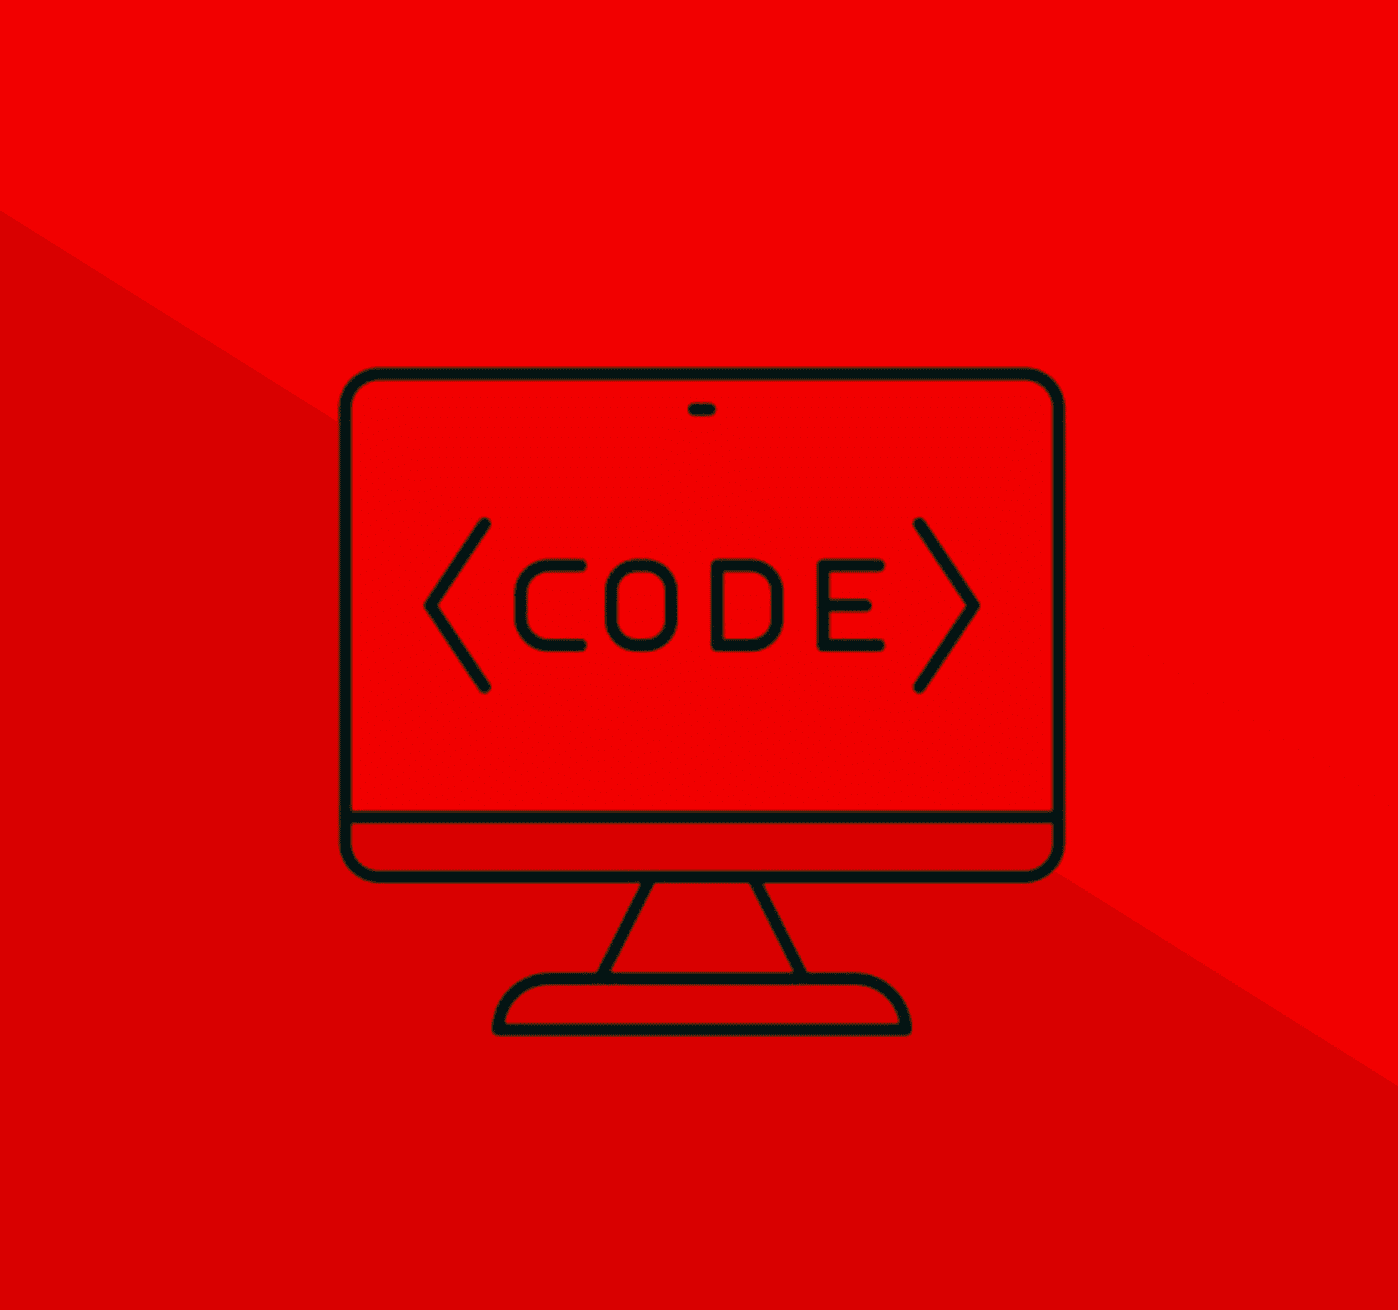 Computer code updates